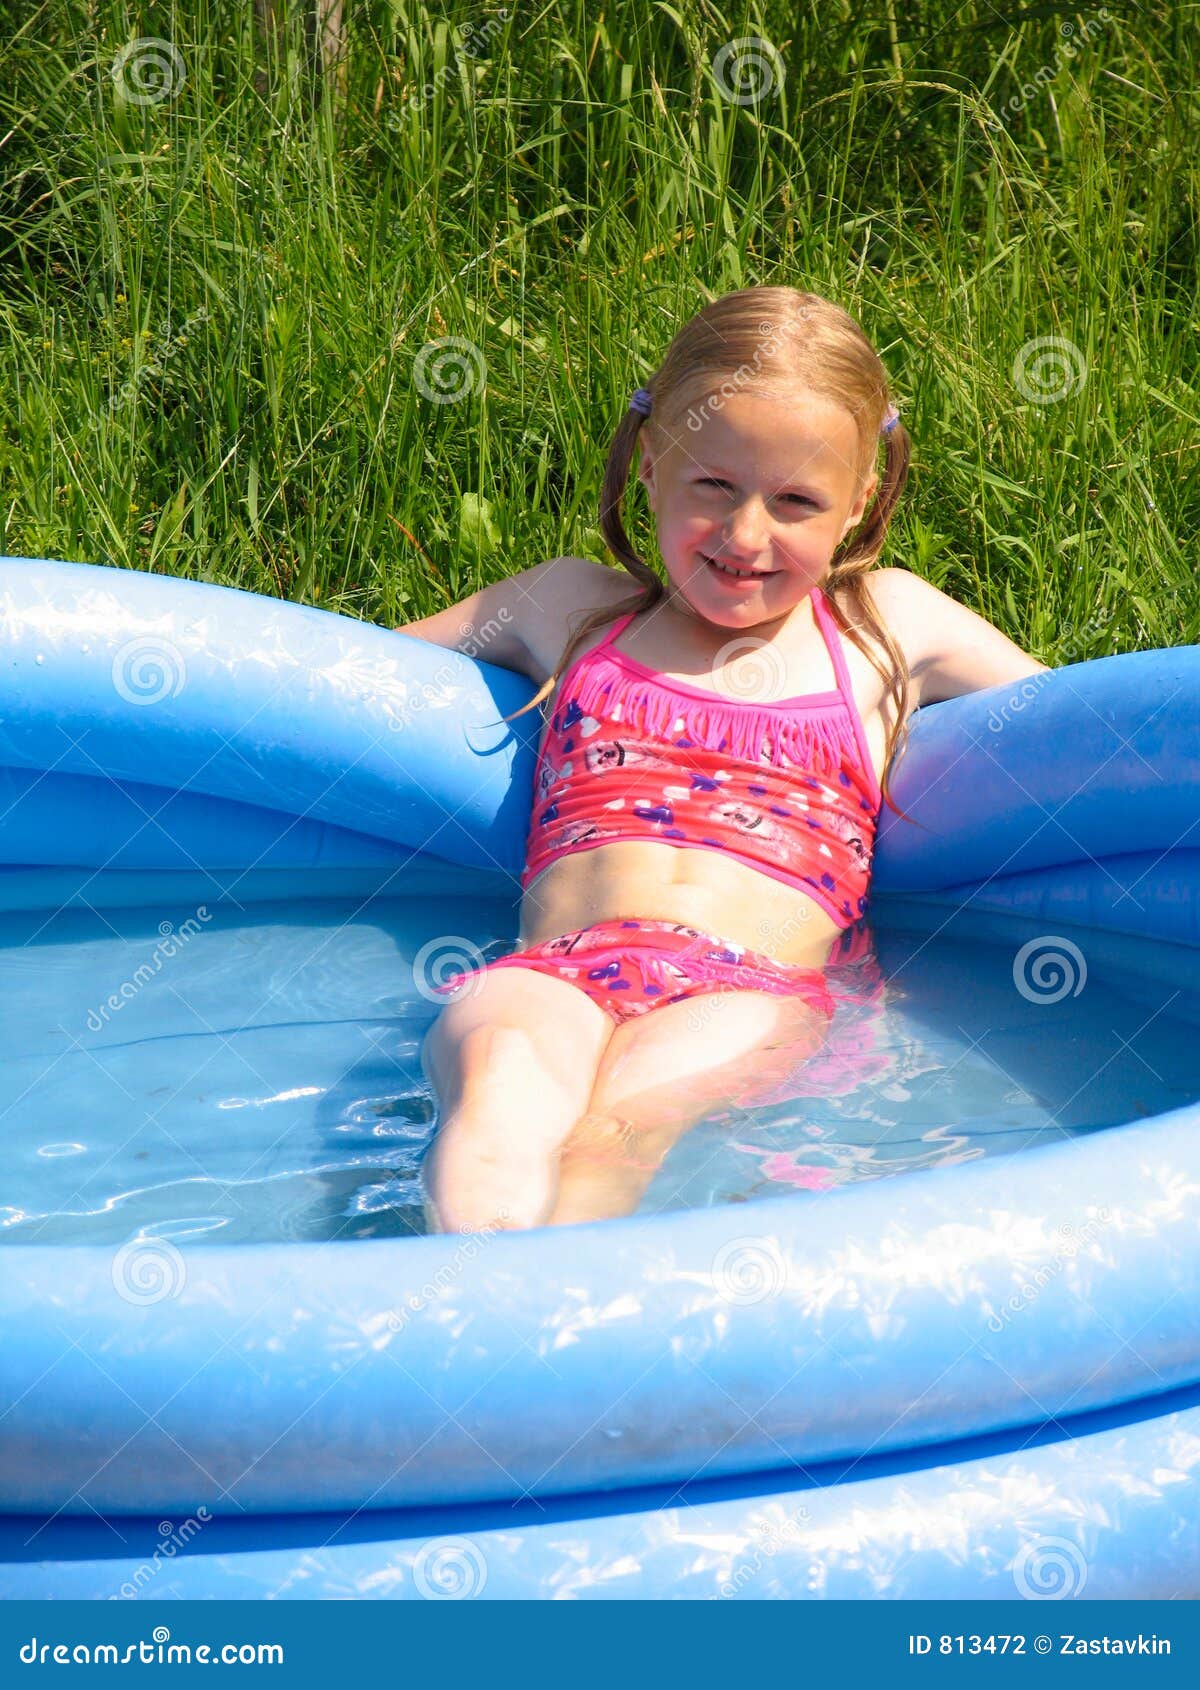 Купаюсь в 10 лет. Девочка в бассейне на даче. Девочка купается в бассейне. Девочки 10 лет в купальниках на даче. Девочки 10 лет в бассейне.